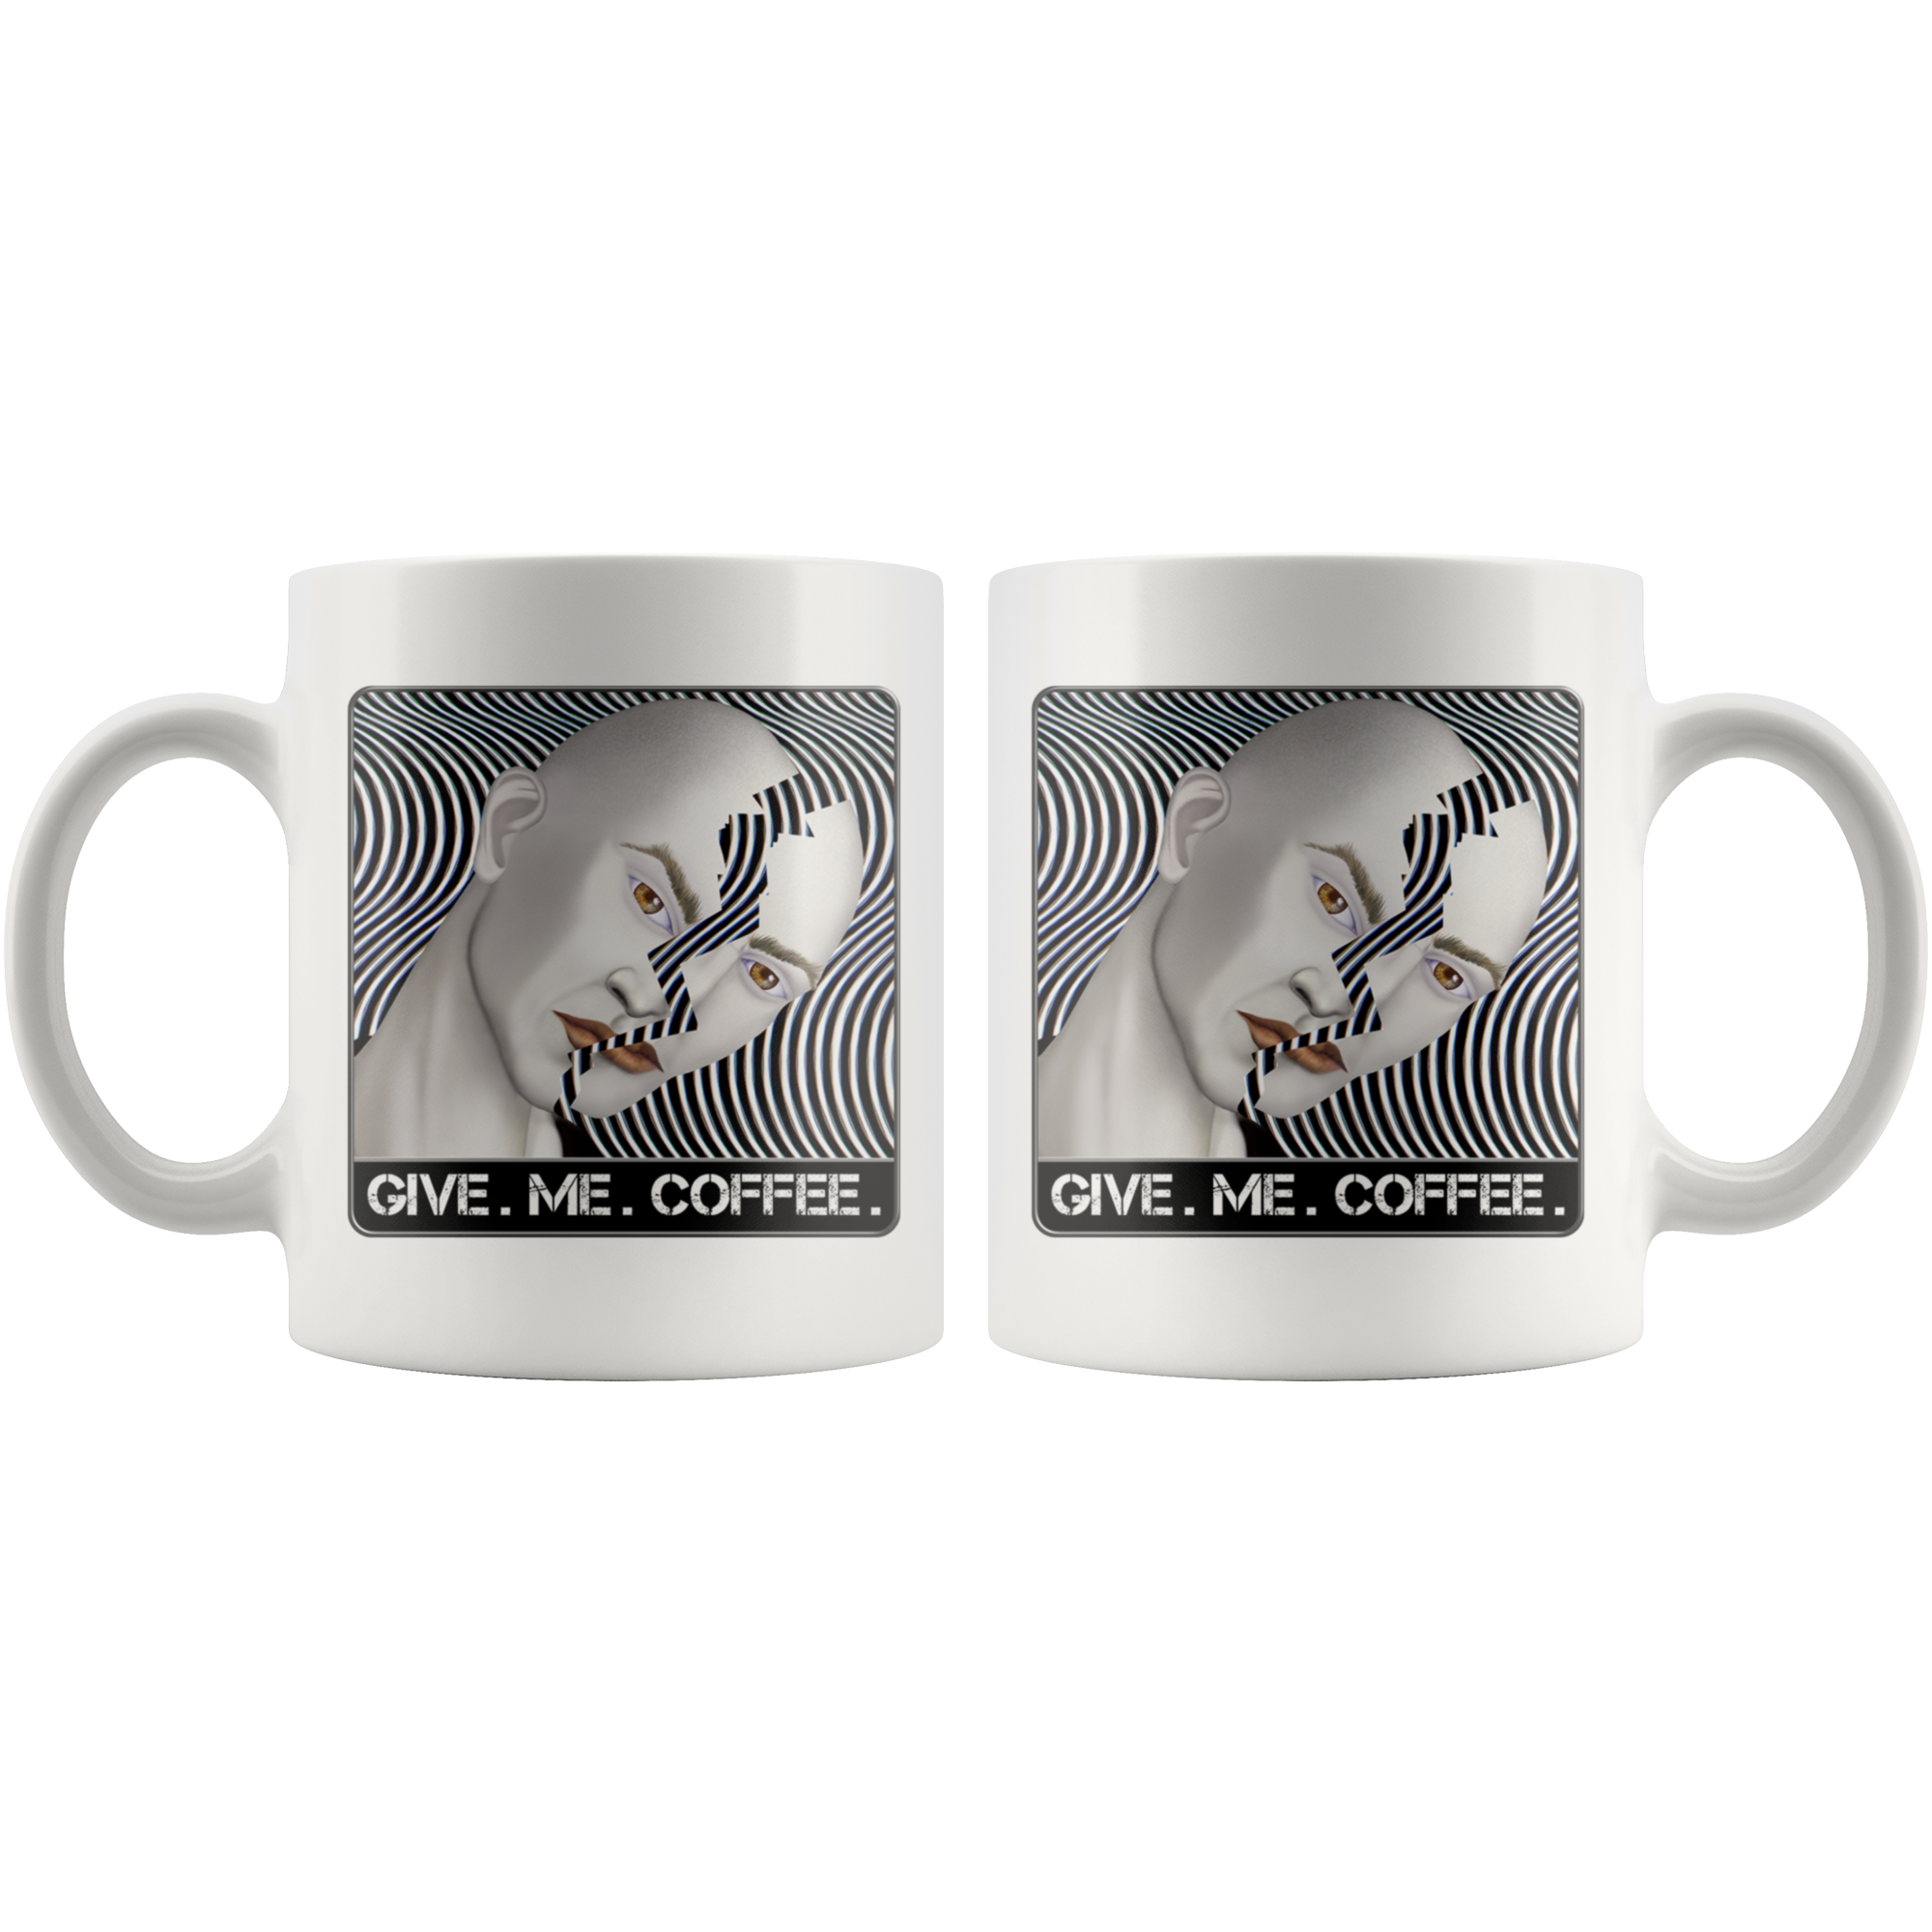 GIVE. ME. COFFEE. - 11 oz. mug